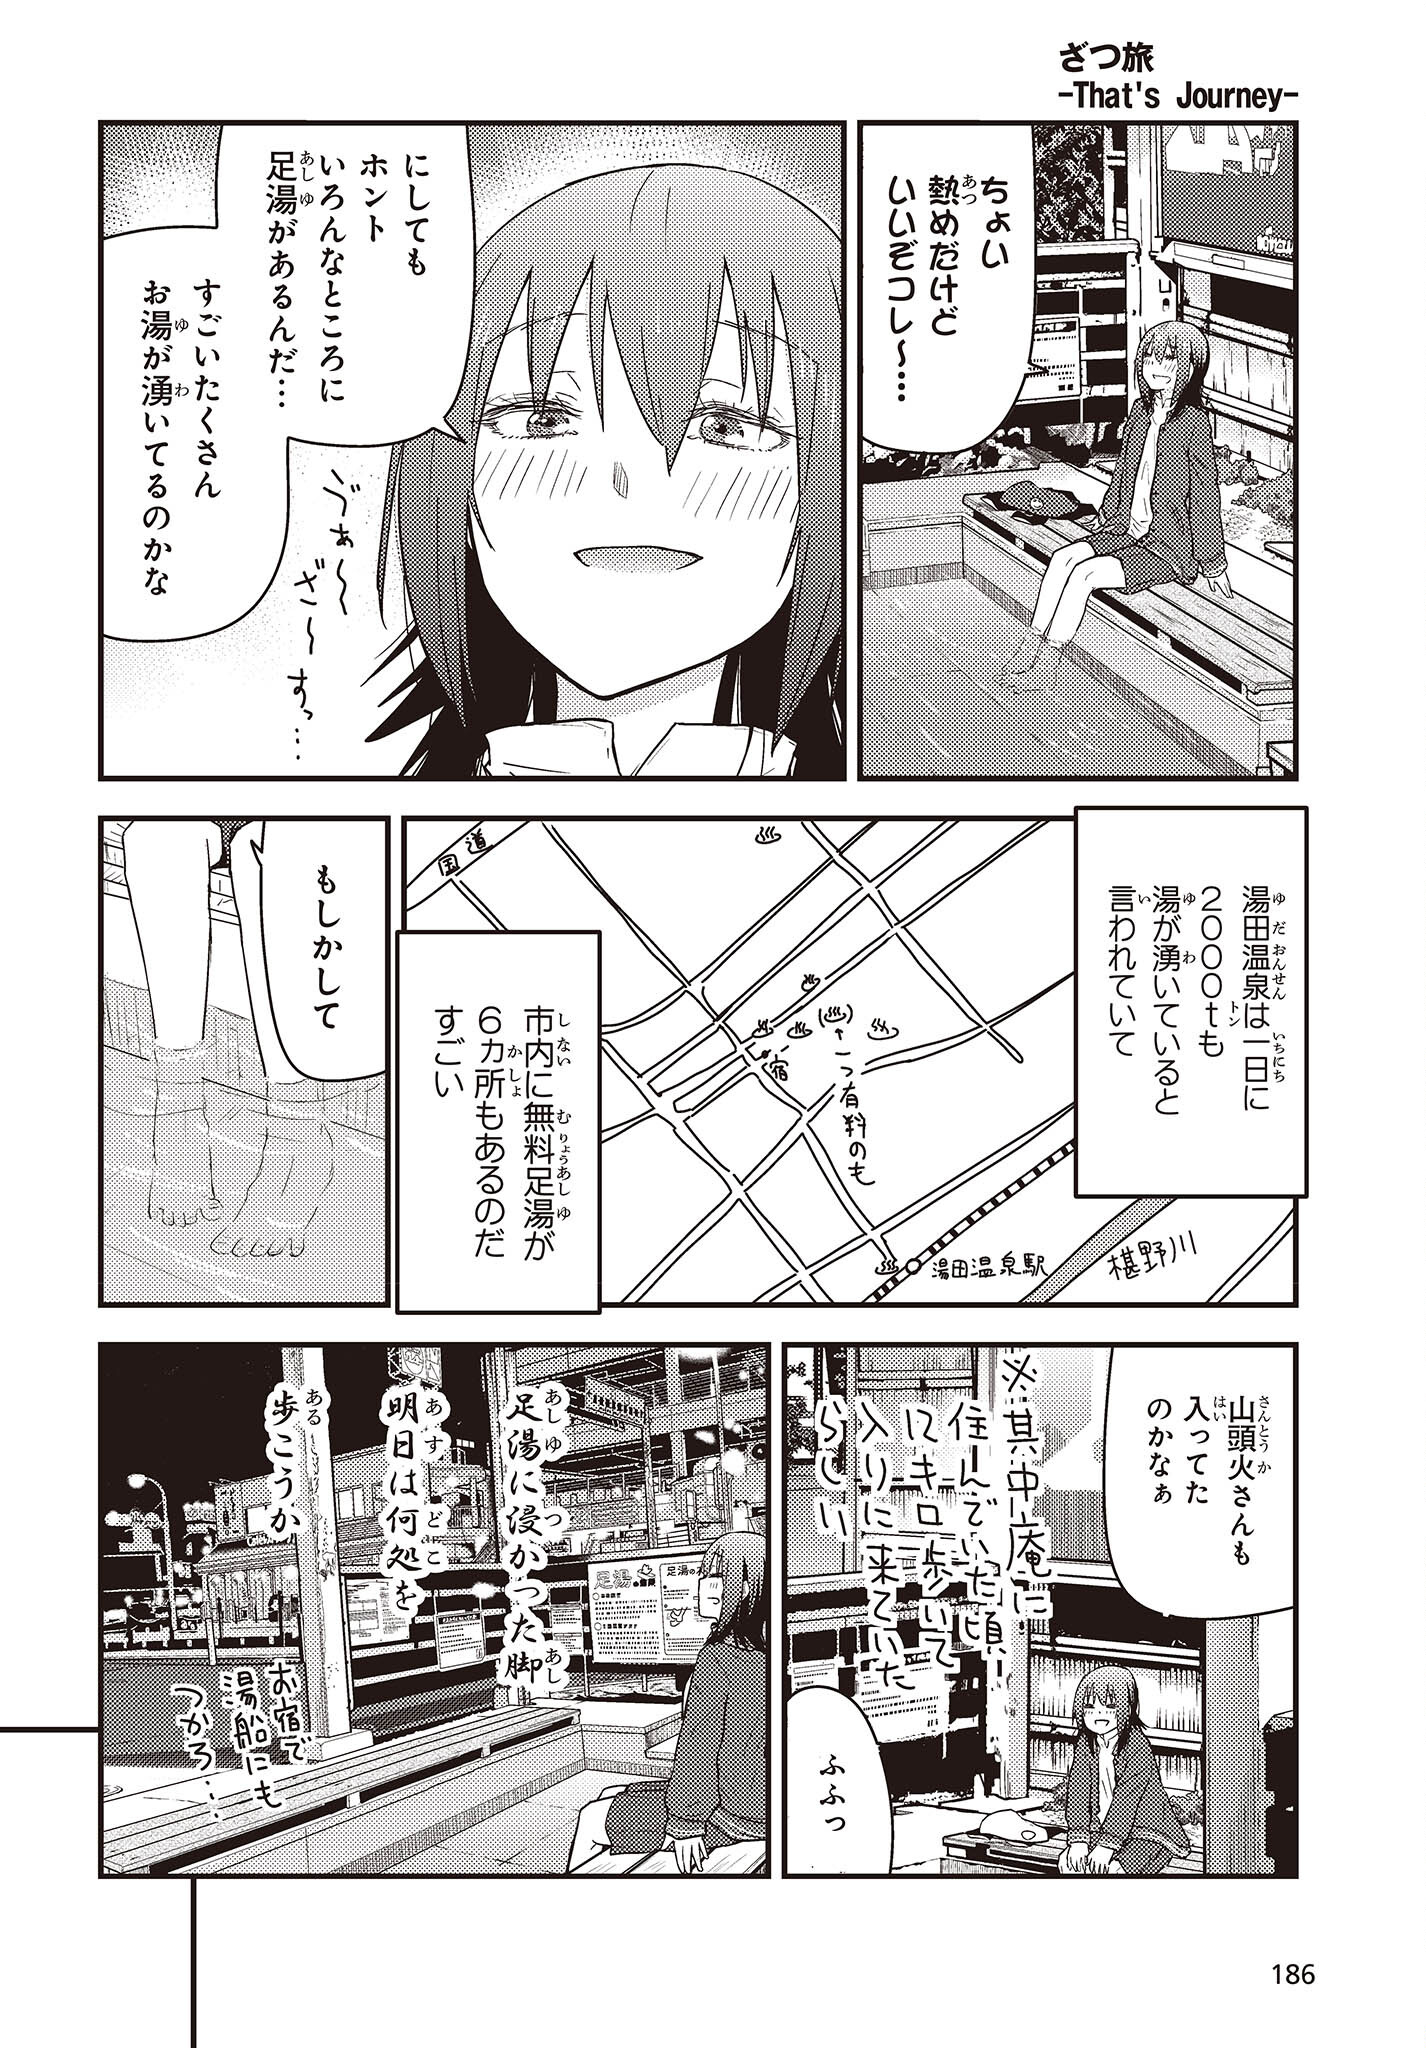 ざつ旅-That's Journey- 第29話 - Page 14